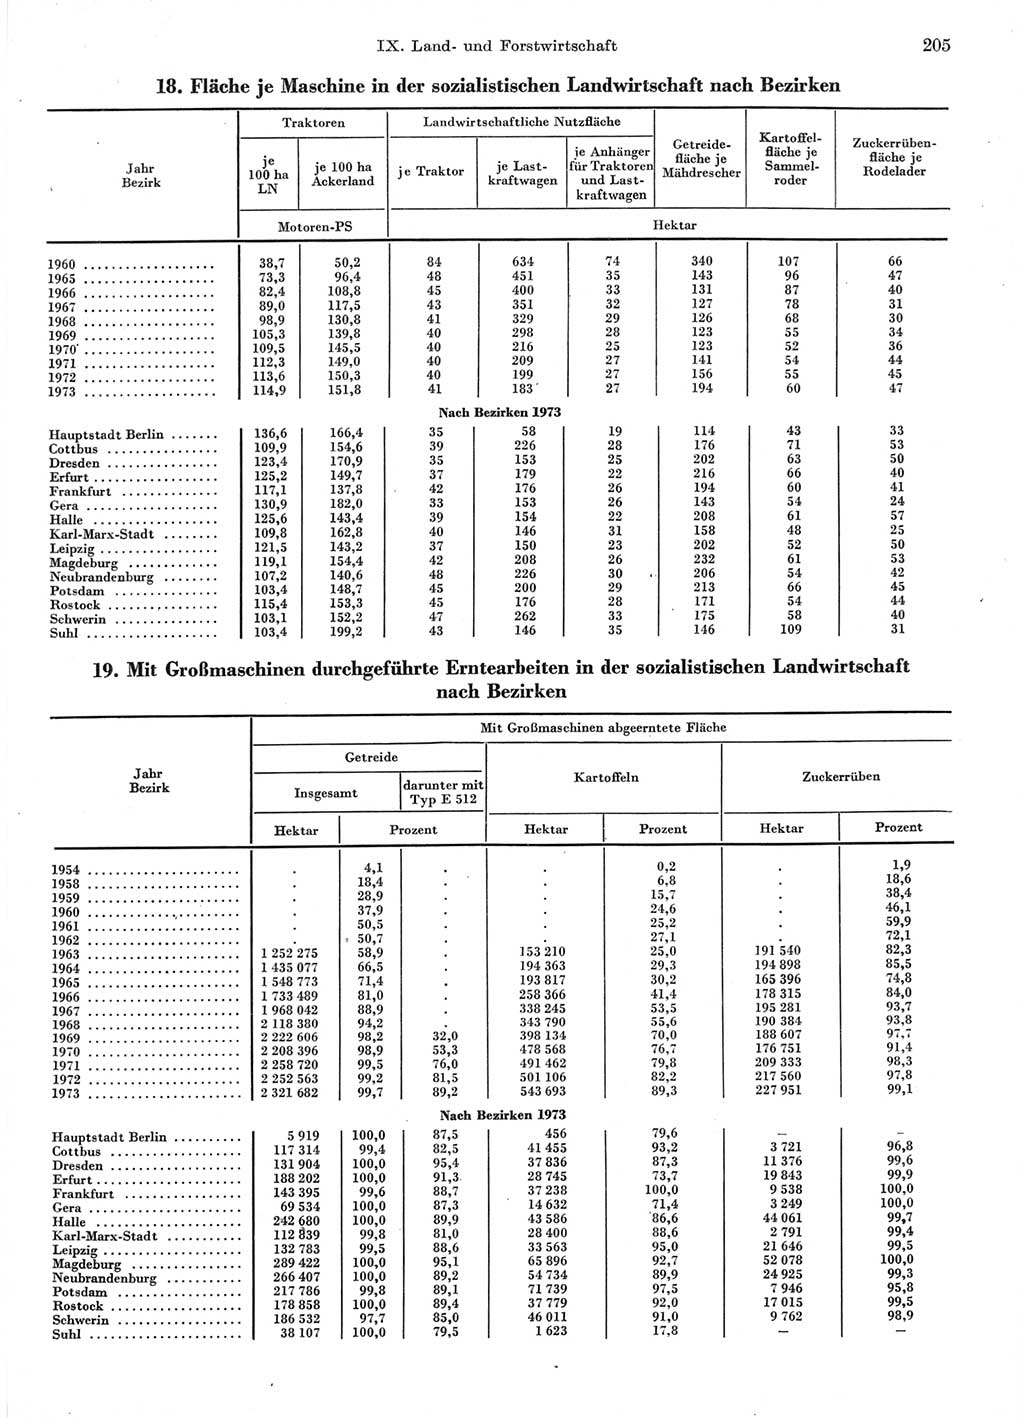 Statistisches Jahrbuch der Deutschen Demokratischen Republik (DDR) 1974, Seite 205 (Stat. Jb. DDR 1974, S. 205)